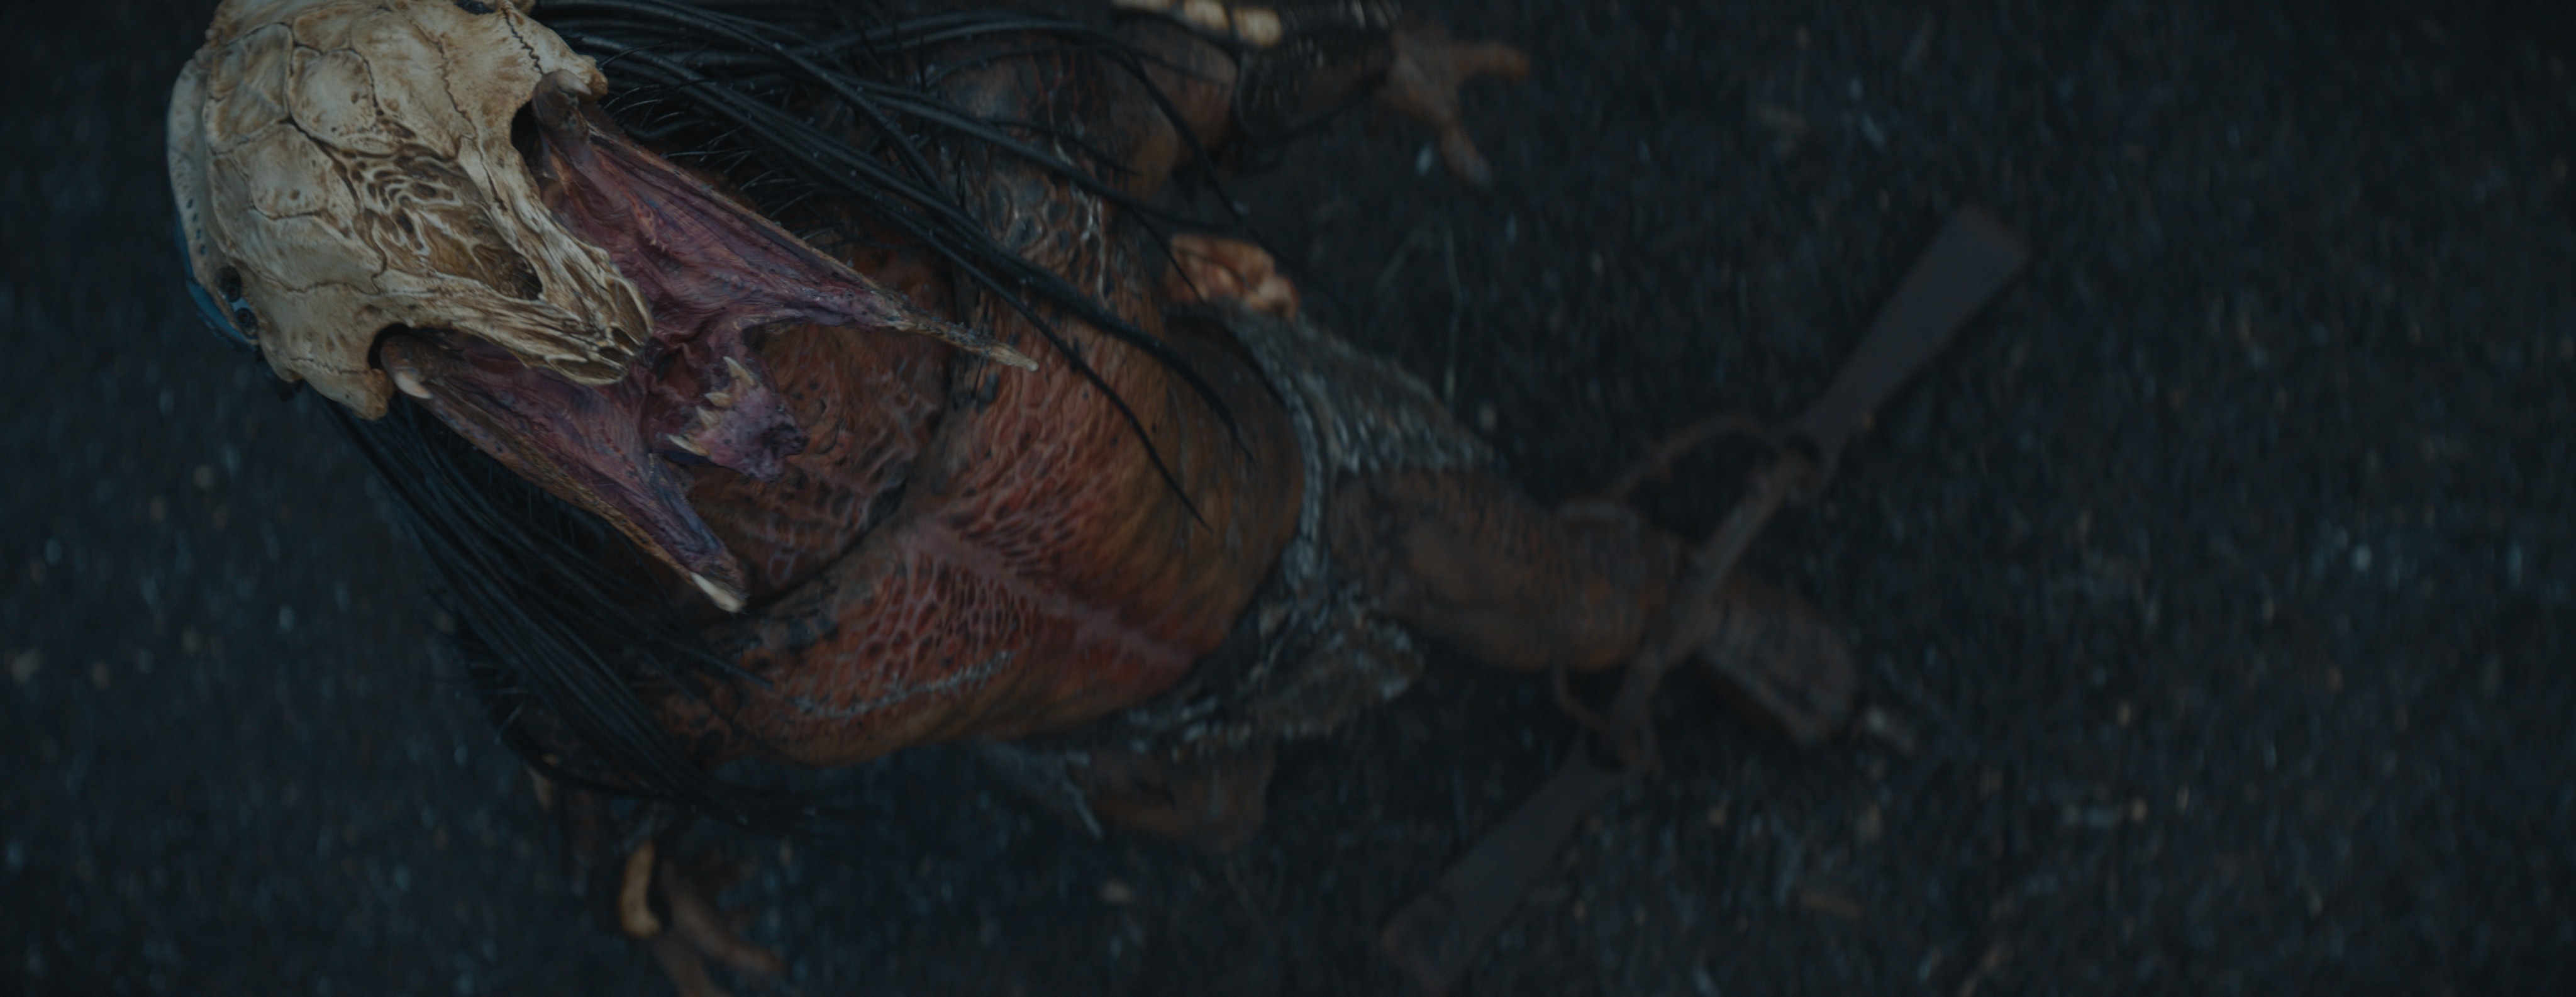 Uma tomada de câmera aérea do Predator rugindo do filme Prey, antes que os efeitos visuais sejam aplicados.